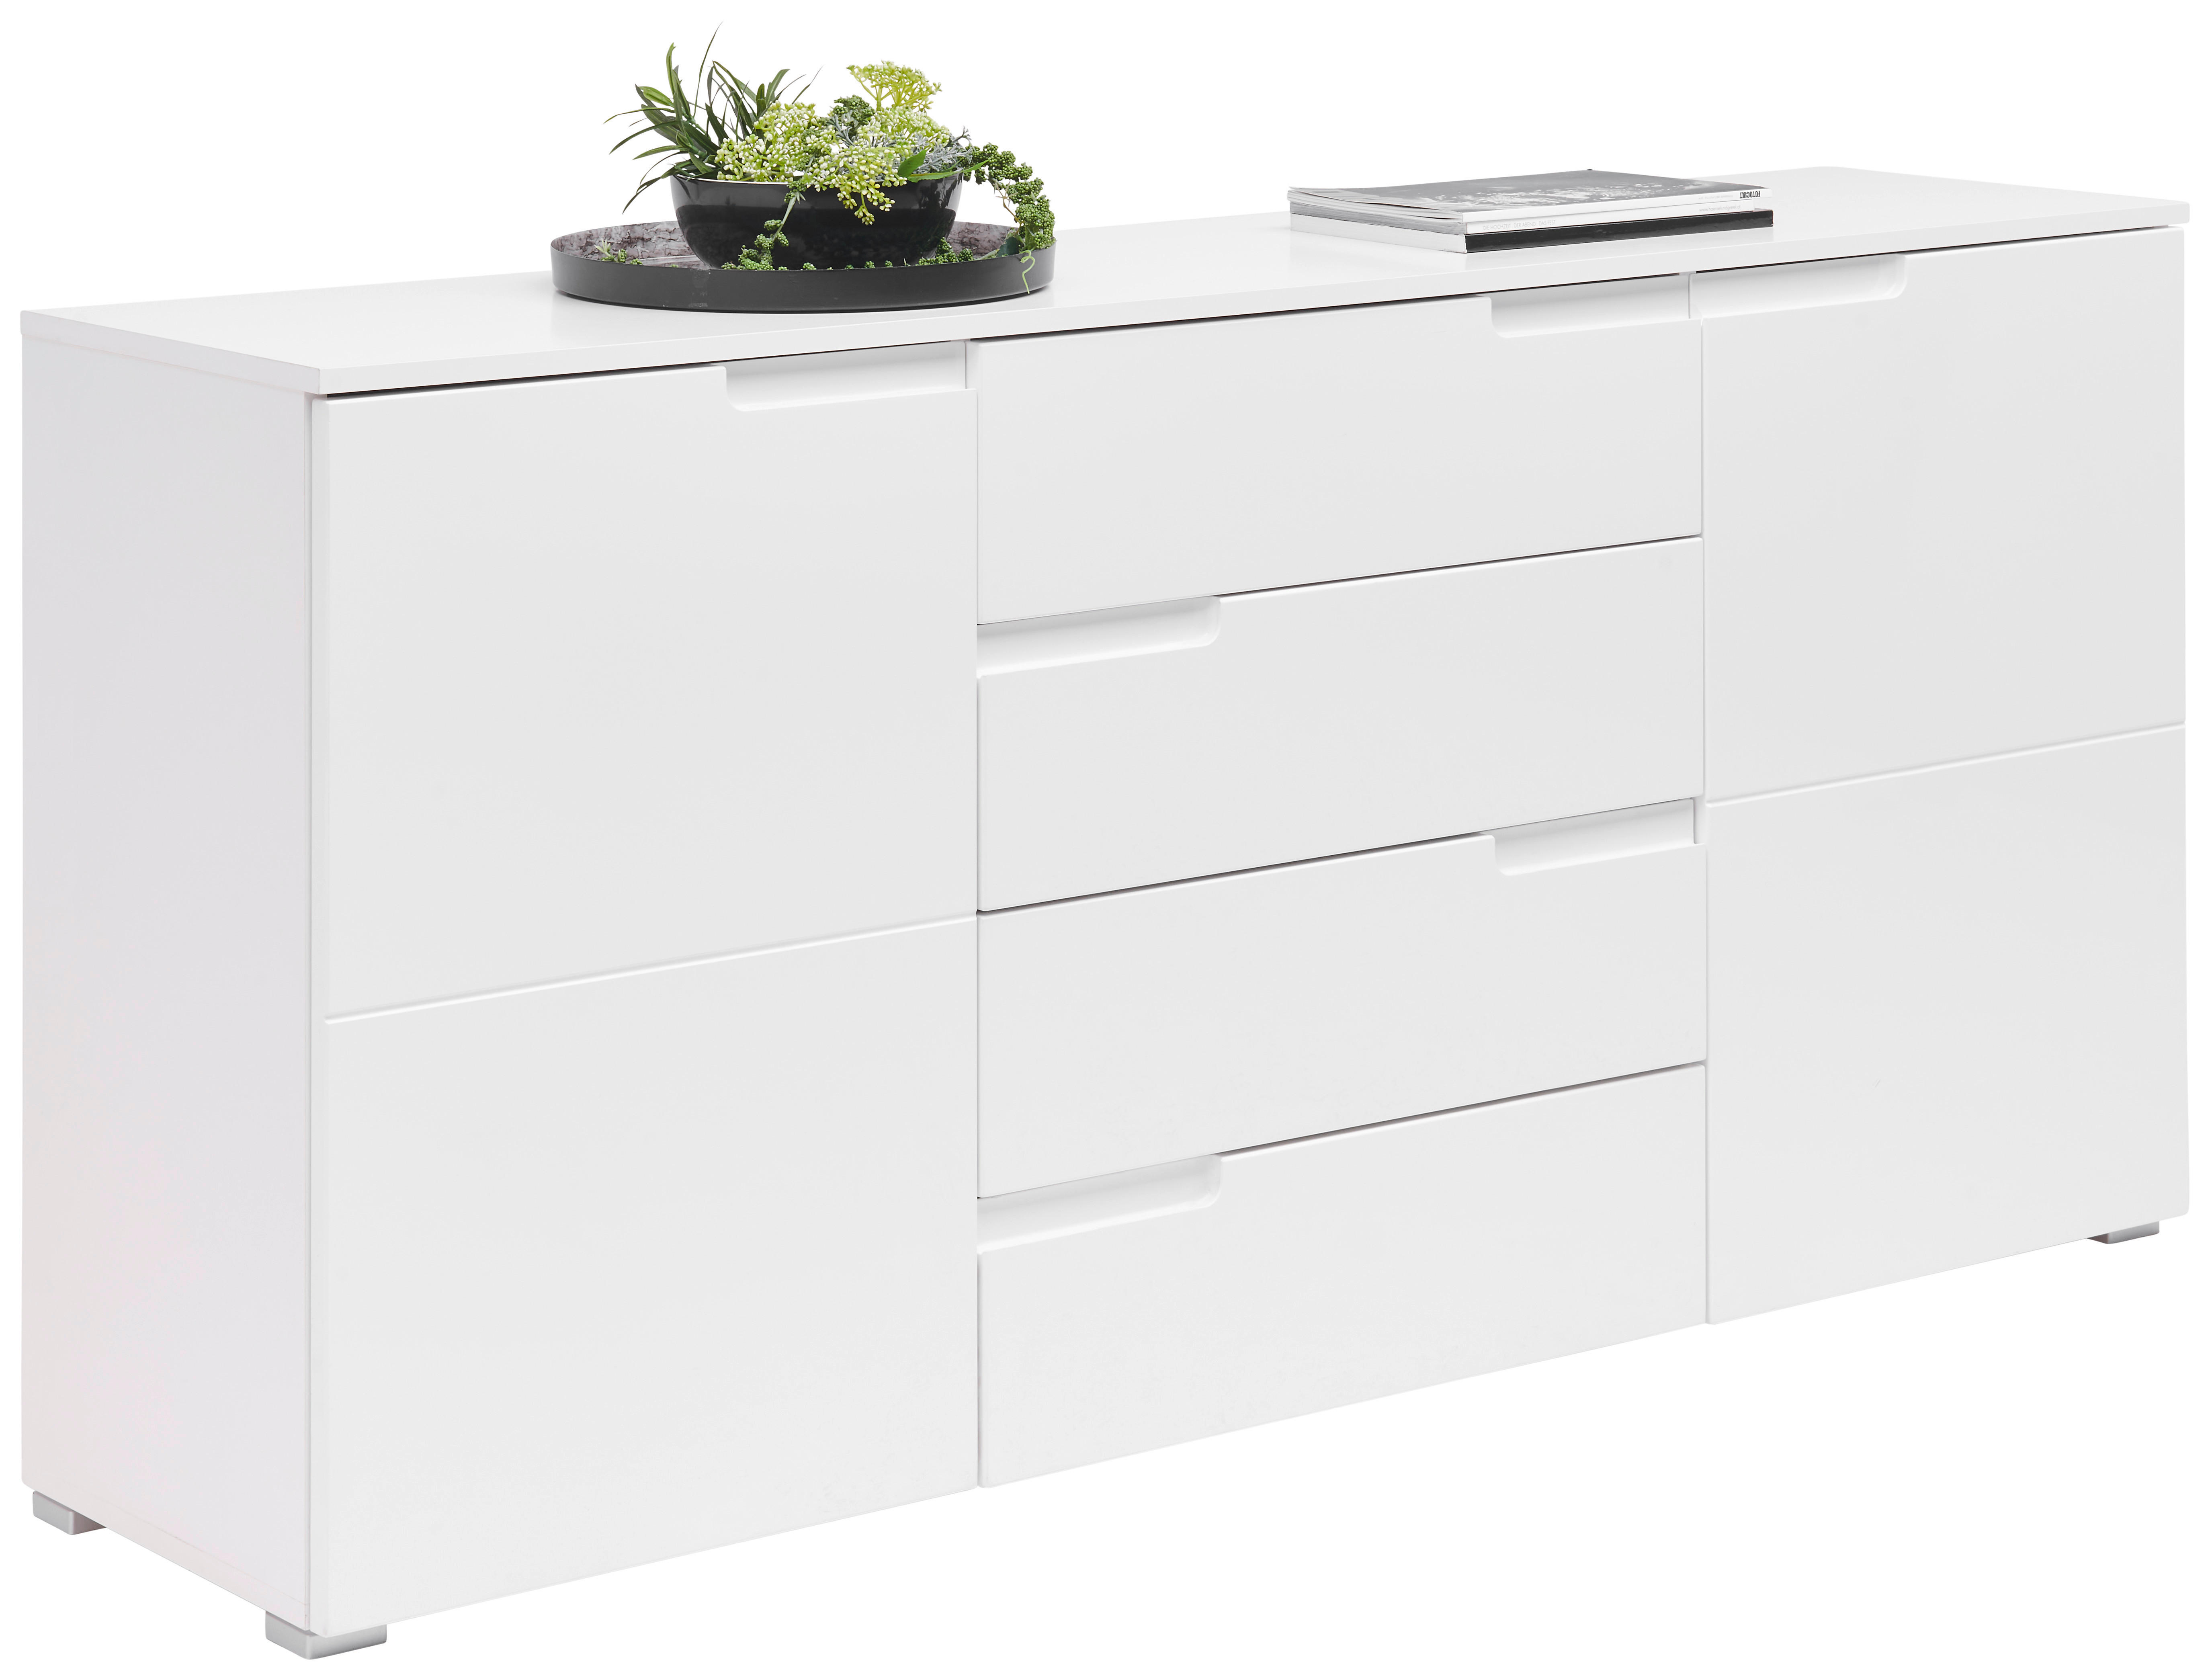 SIDEBOARD Weiß, Weiß Hochglanz  - Weiß Hochglanz/Silberfarben, Design, Holzwerkstoff/Kunststoff (165/80/40cm) - Carryhome